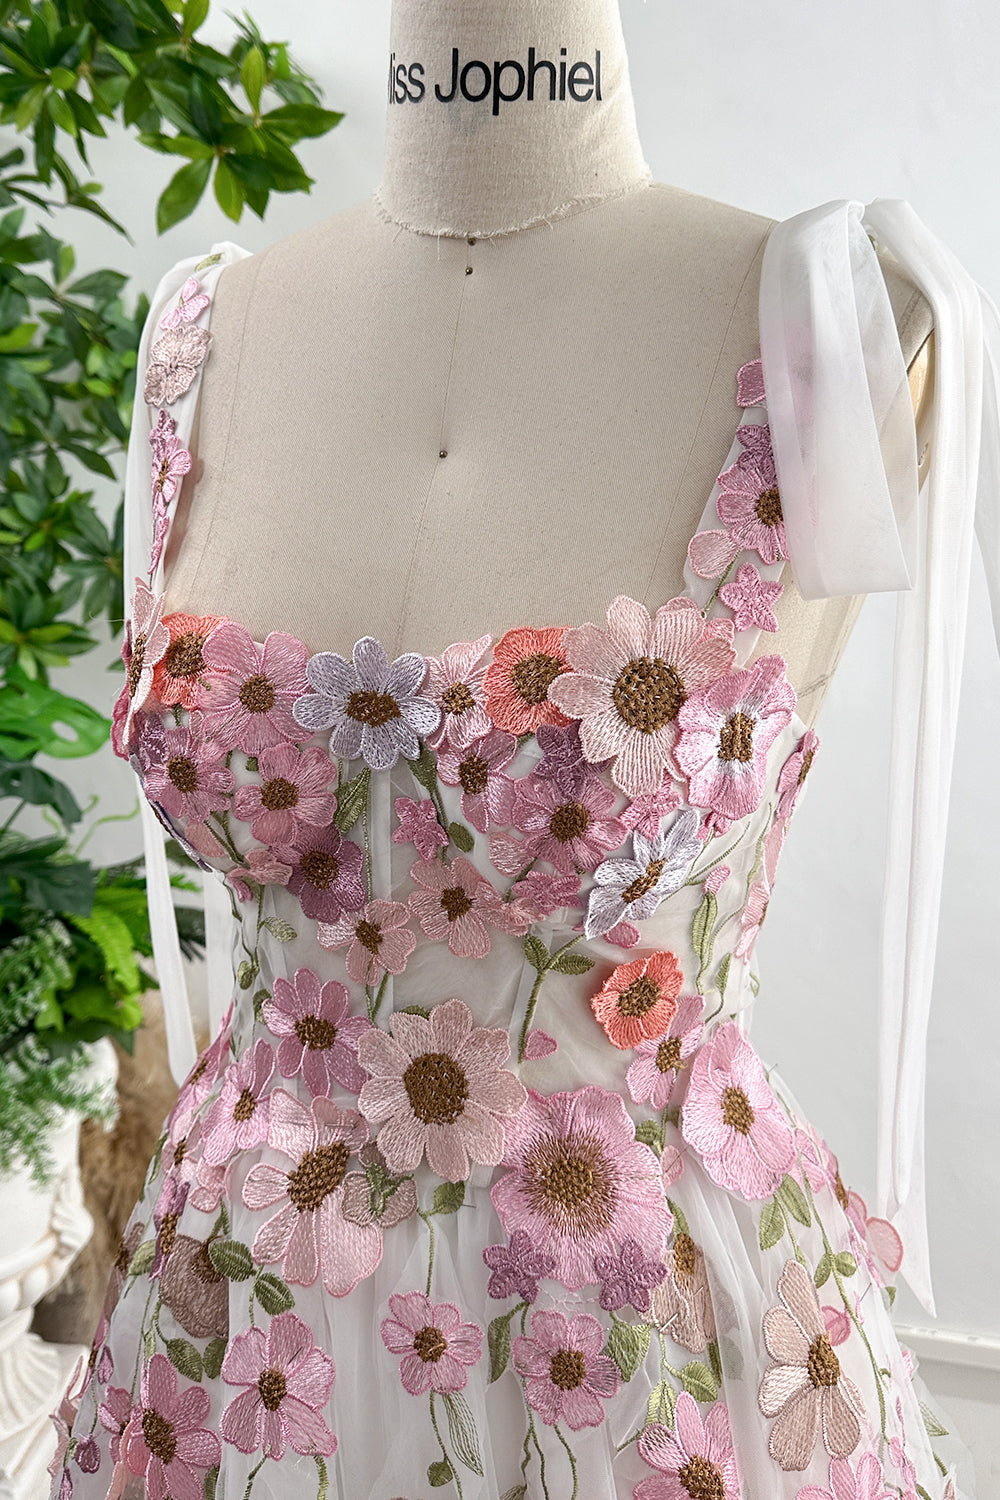 Applique Floral Corset Side Slit Dress with Removable Tie Straps